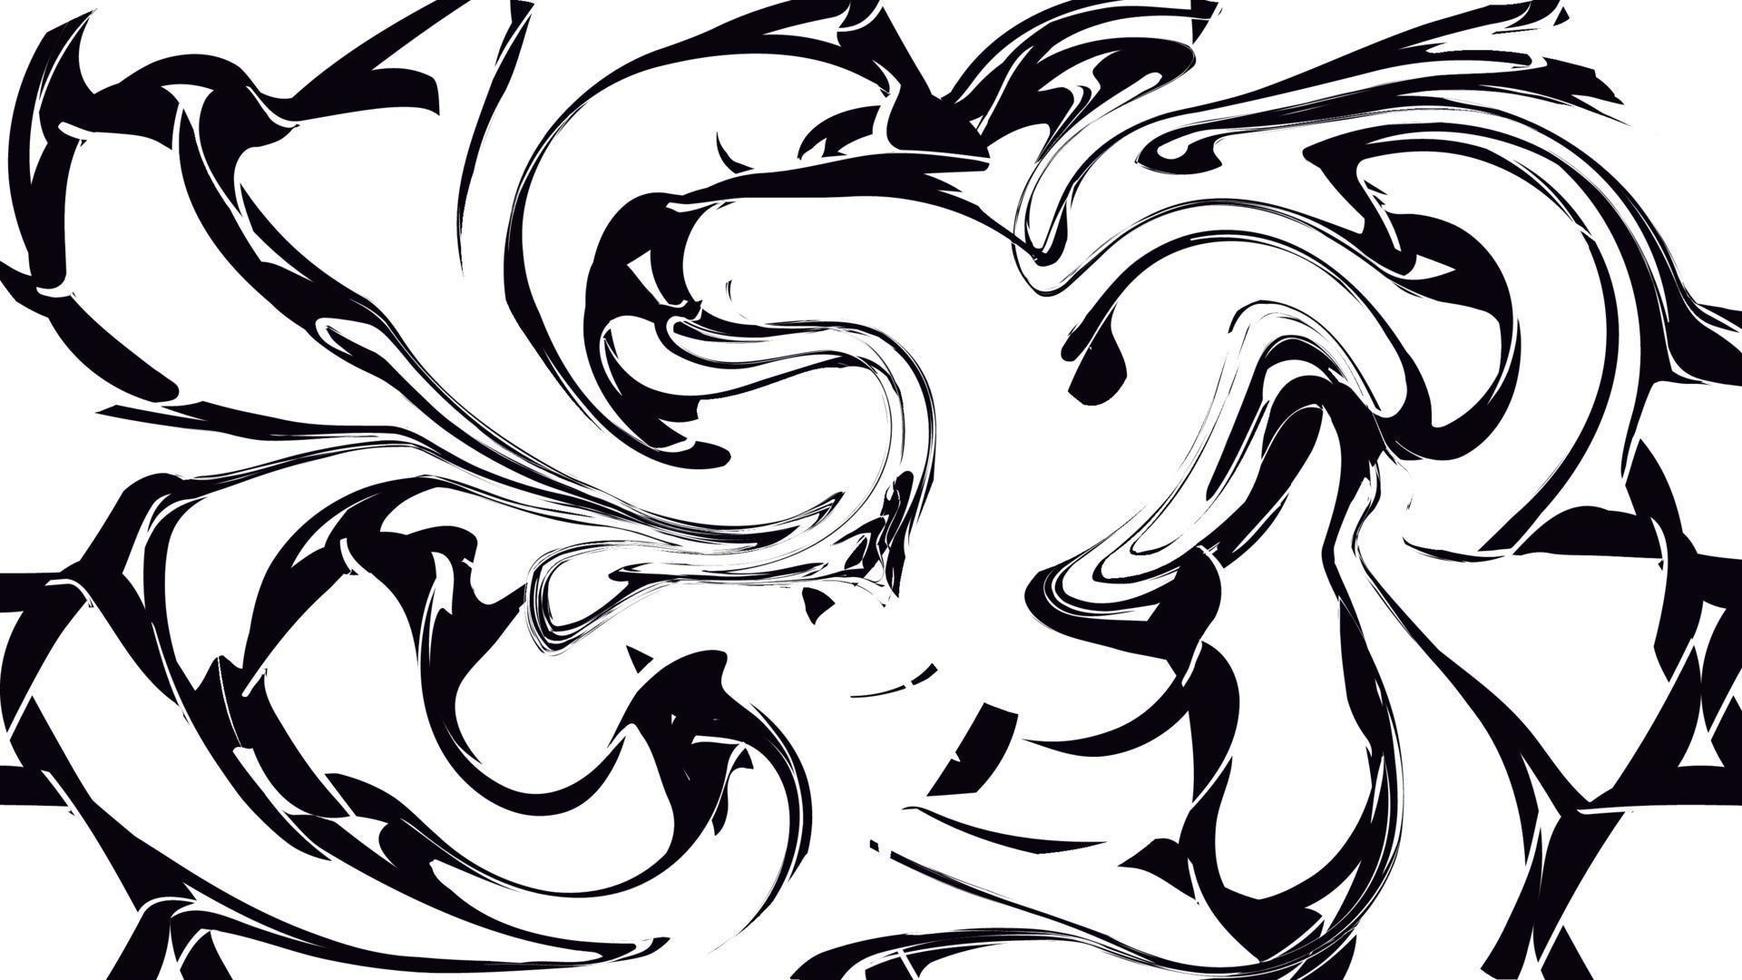 zwart en wit abstract achtergrond van divers lijnen en strepen van golven van spatten en barst van energie sprankelend magisch elektrisch. textuur. vector illustratie